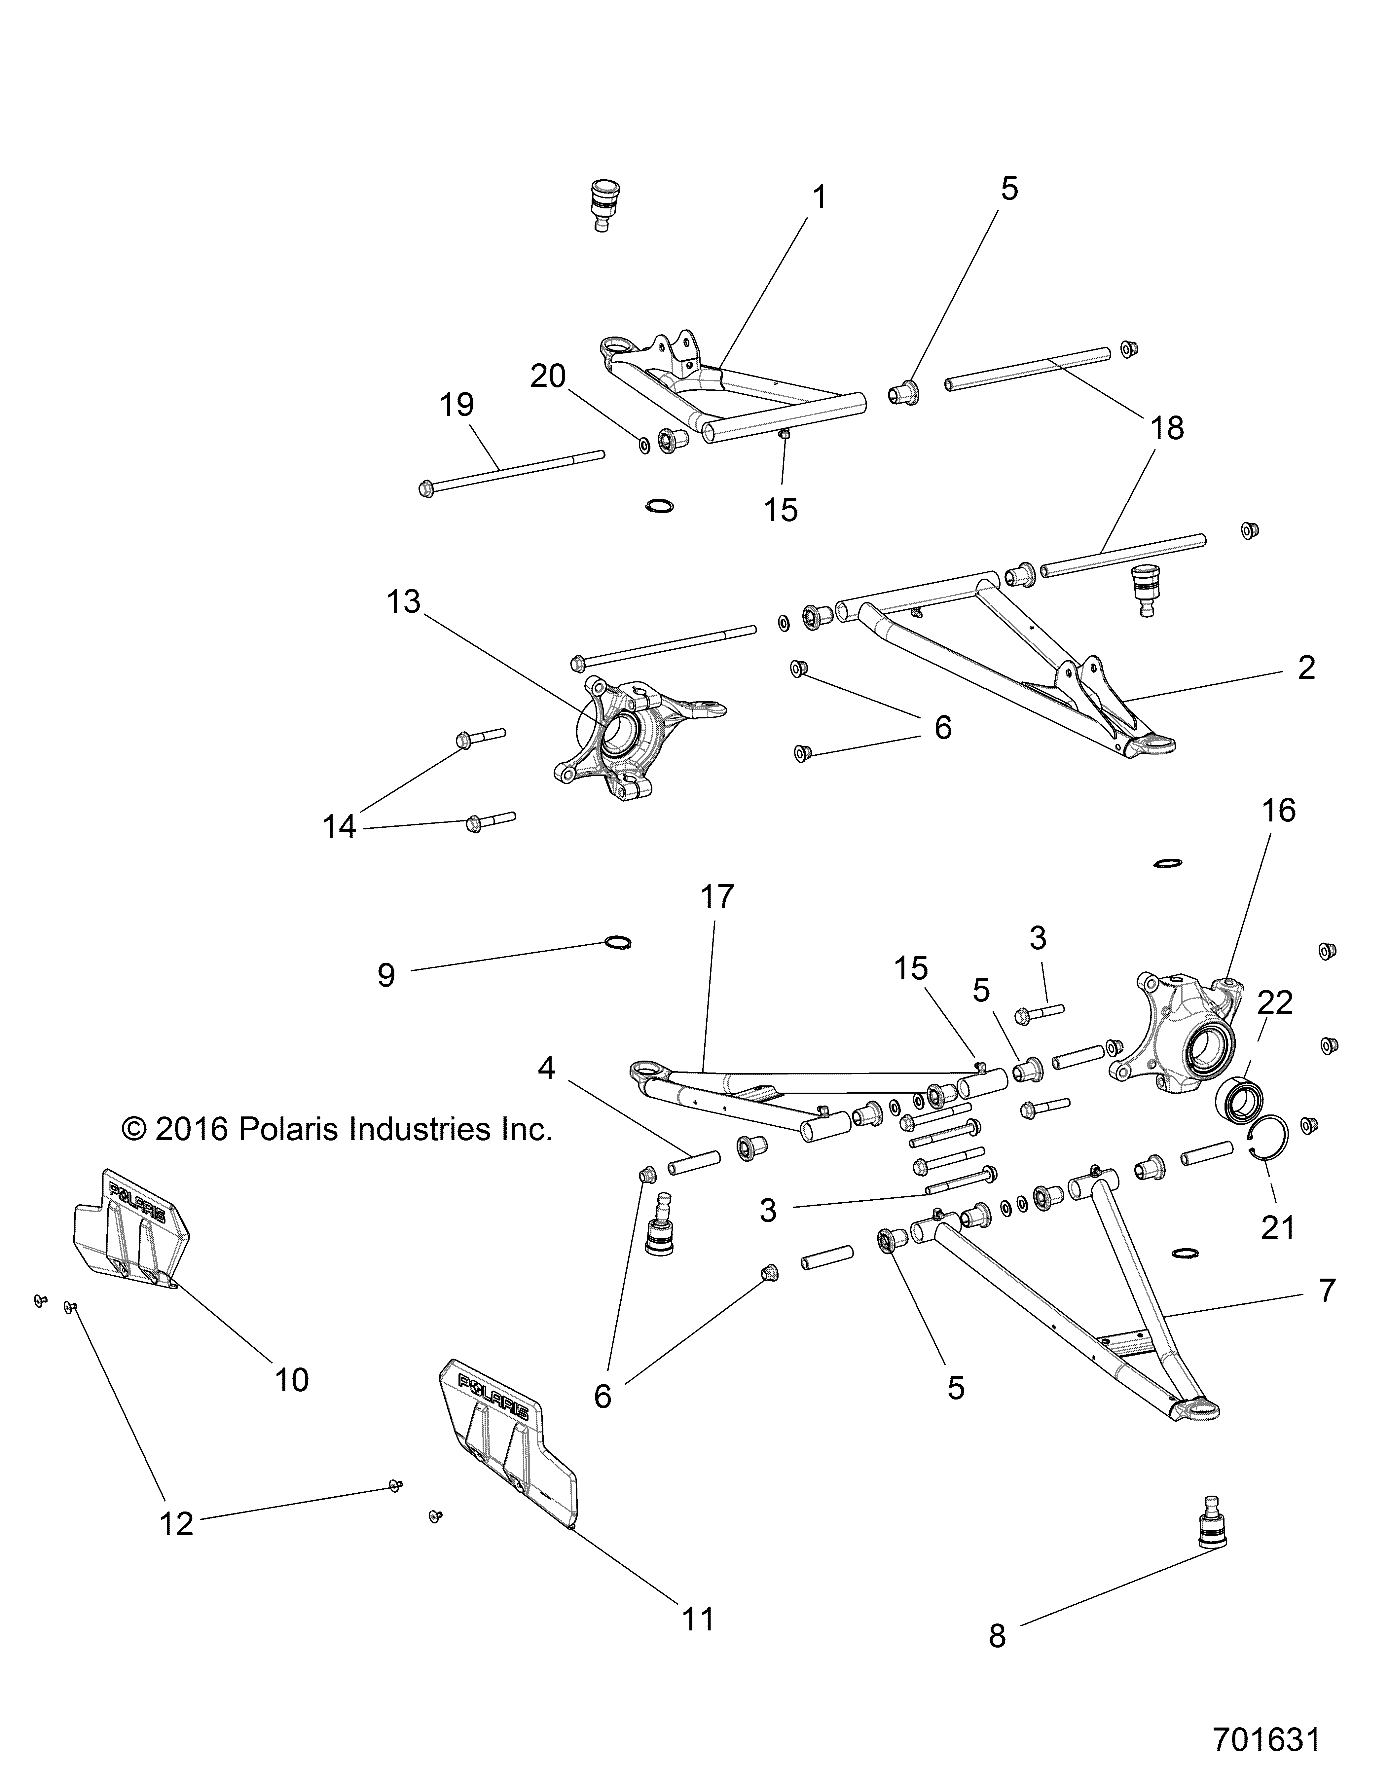 Foto diagrama Polaris que contem a peça 1020887-689